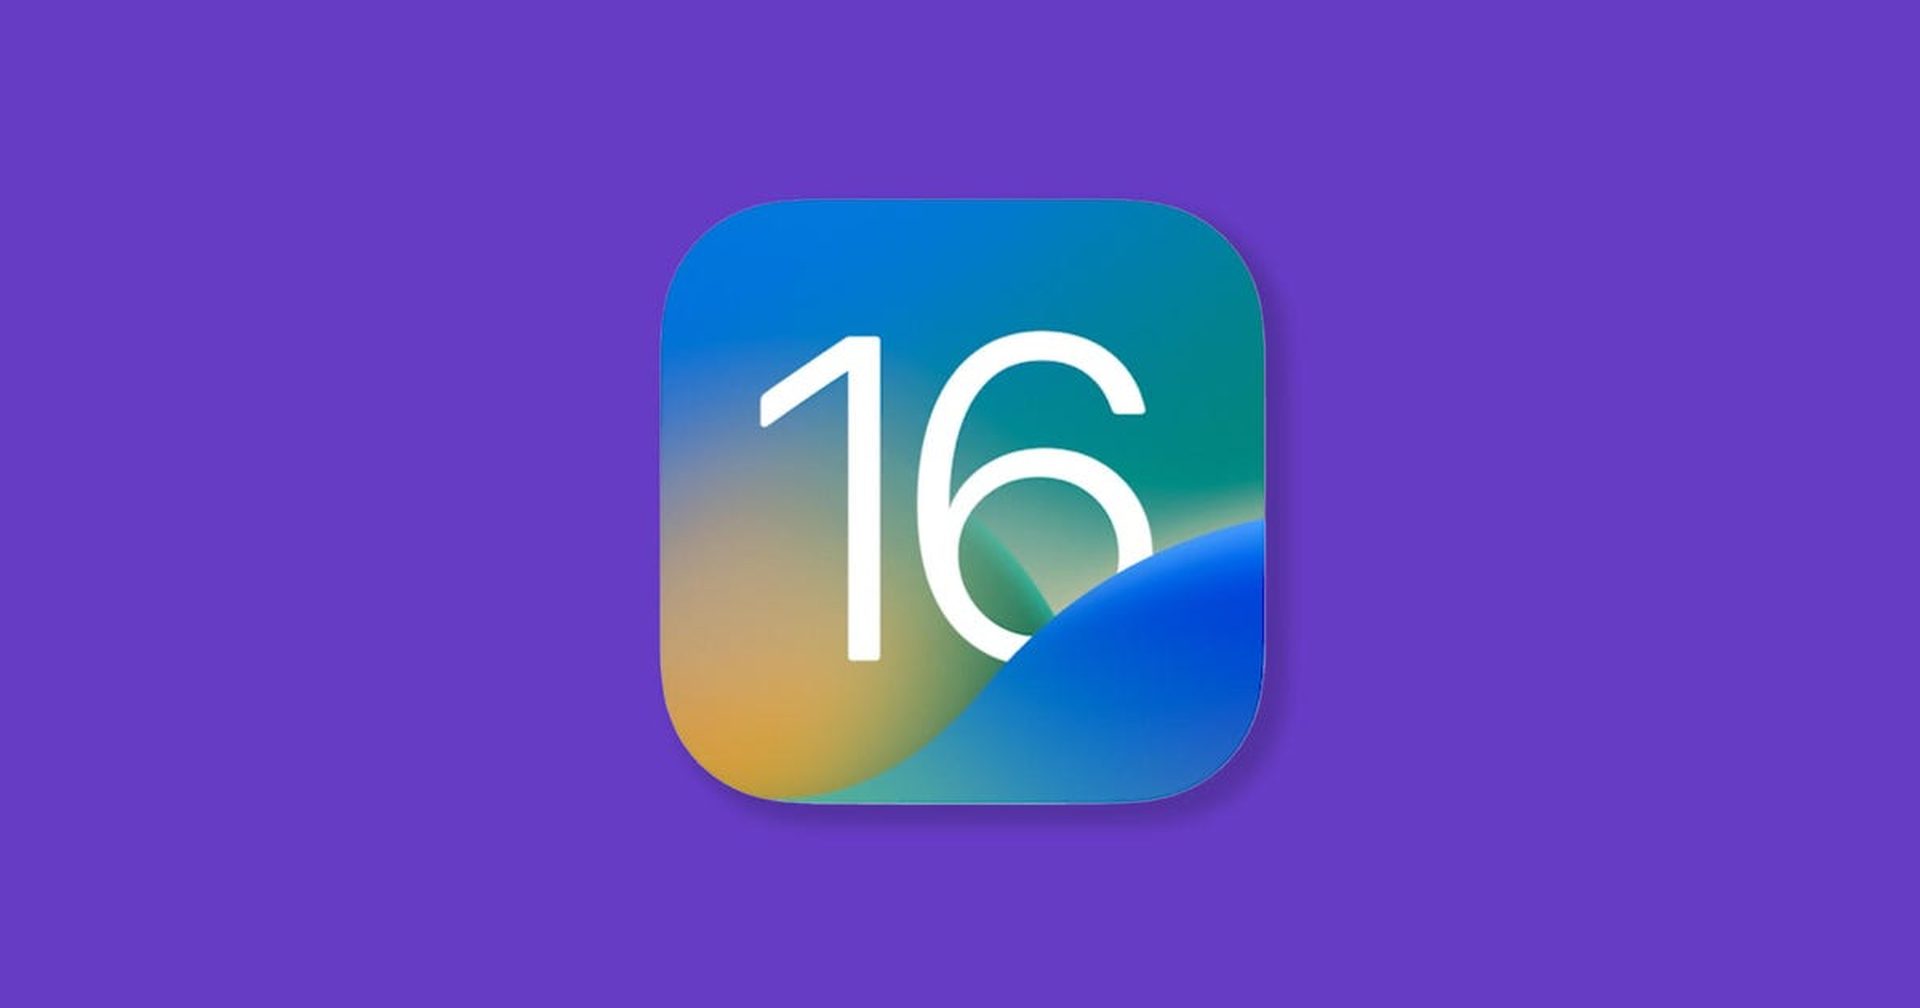 iOS 16 mobildata fungerar inte: Hur fixar jag det?